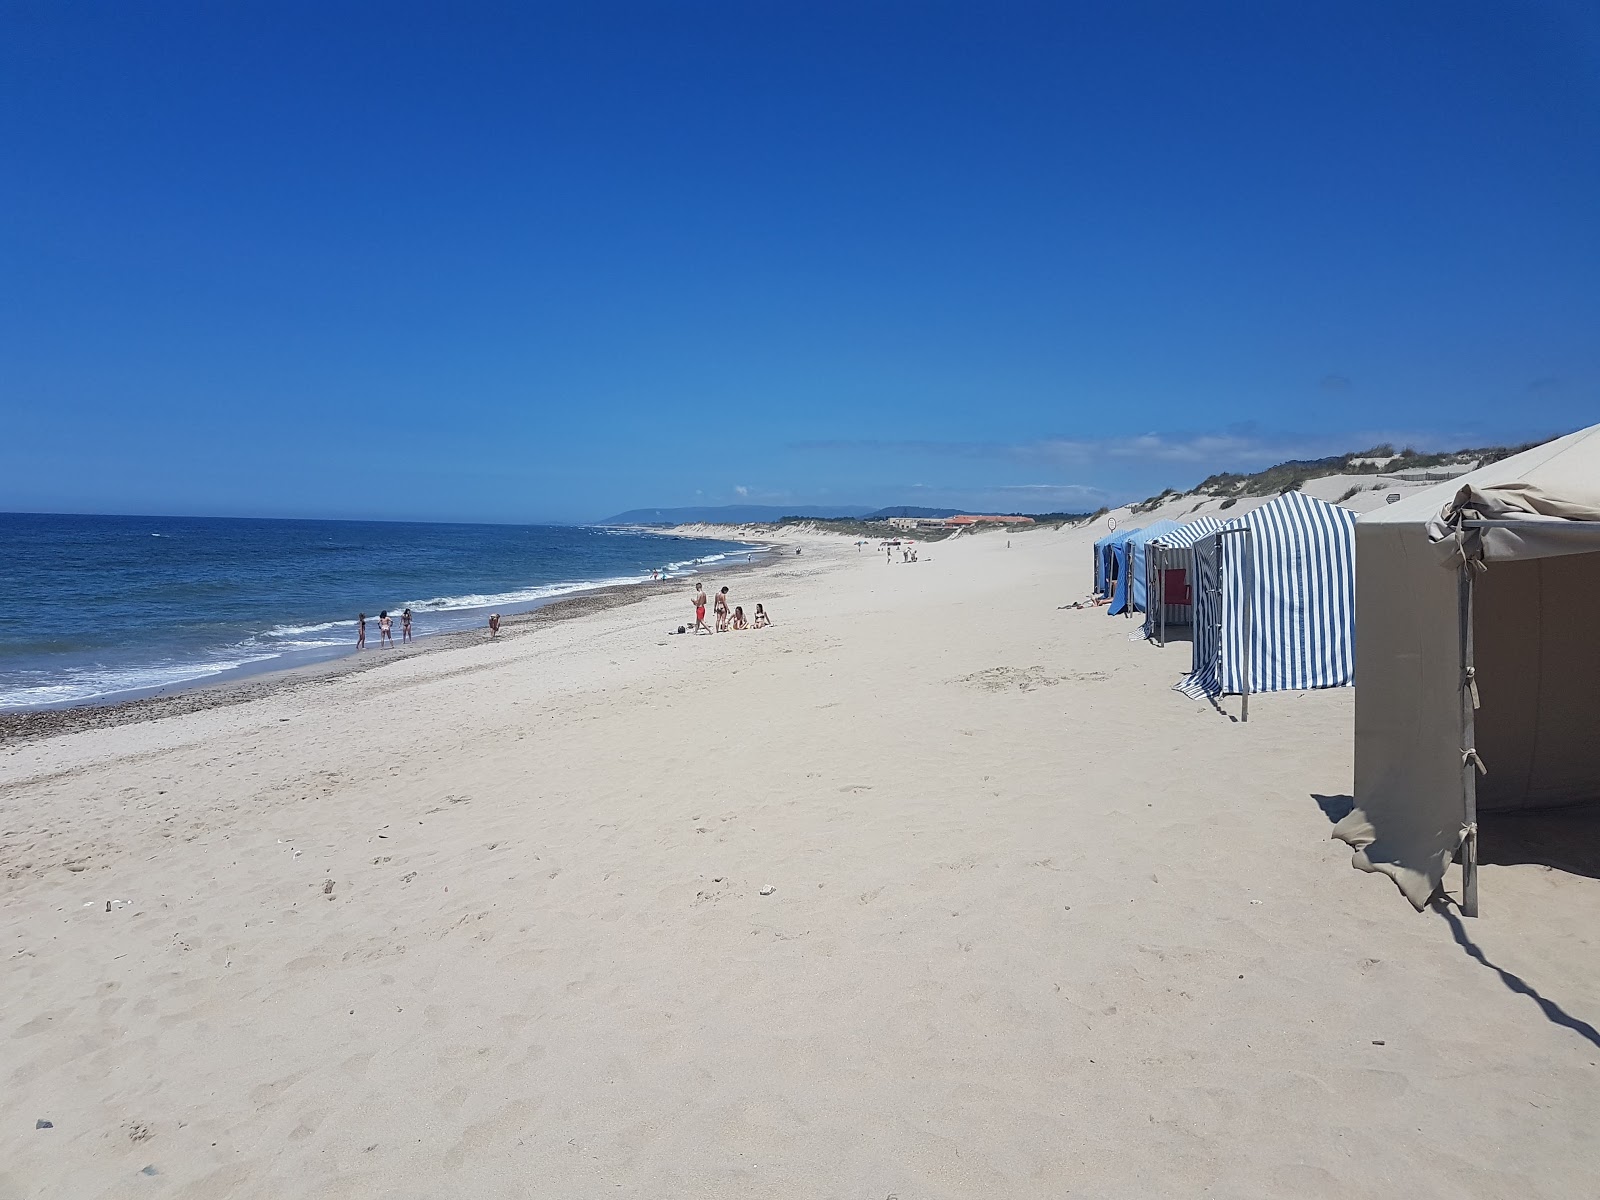 Praia de Suave Mar'in fotoğrafı geniş plaj ile birlikte